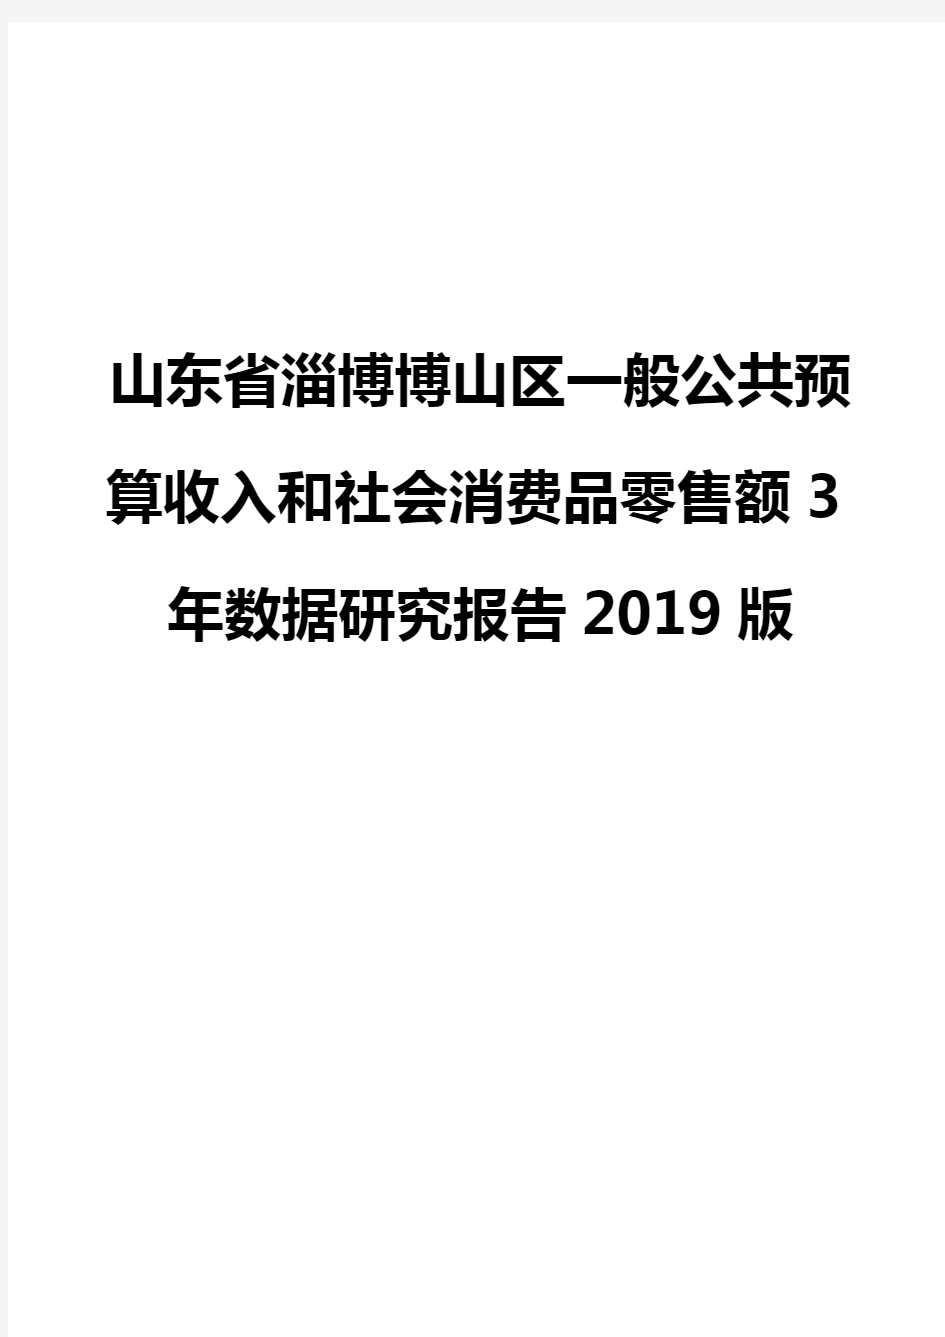 山东省淄博博山区一般公共预算收入和社会消费品零售额3年数据研究报告2019版